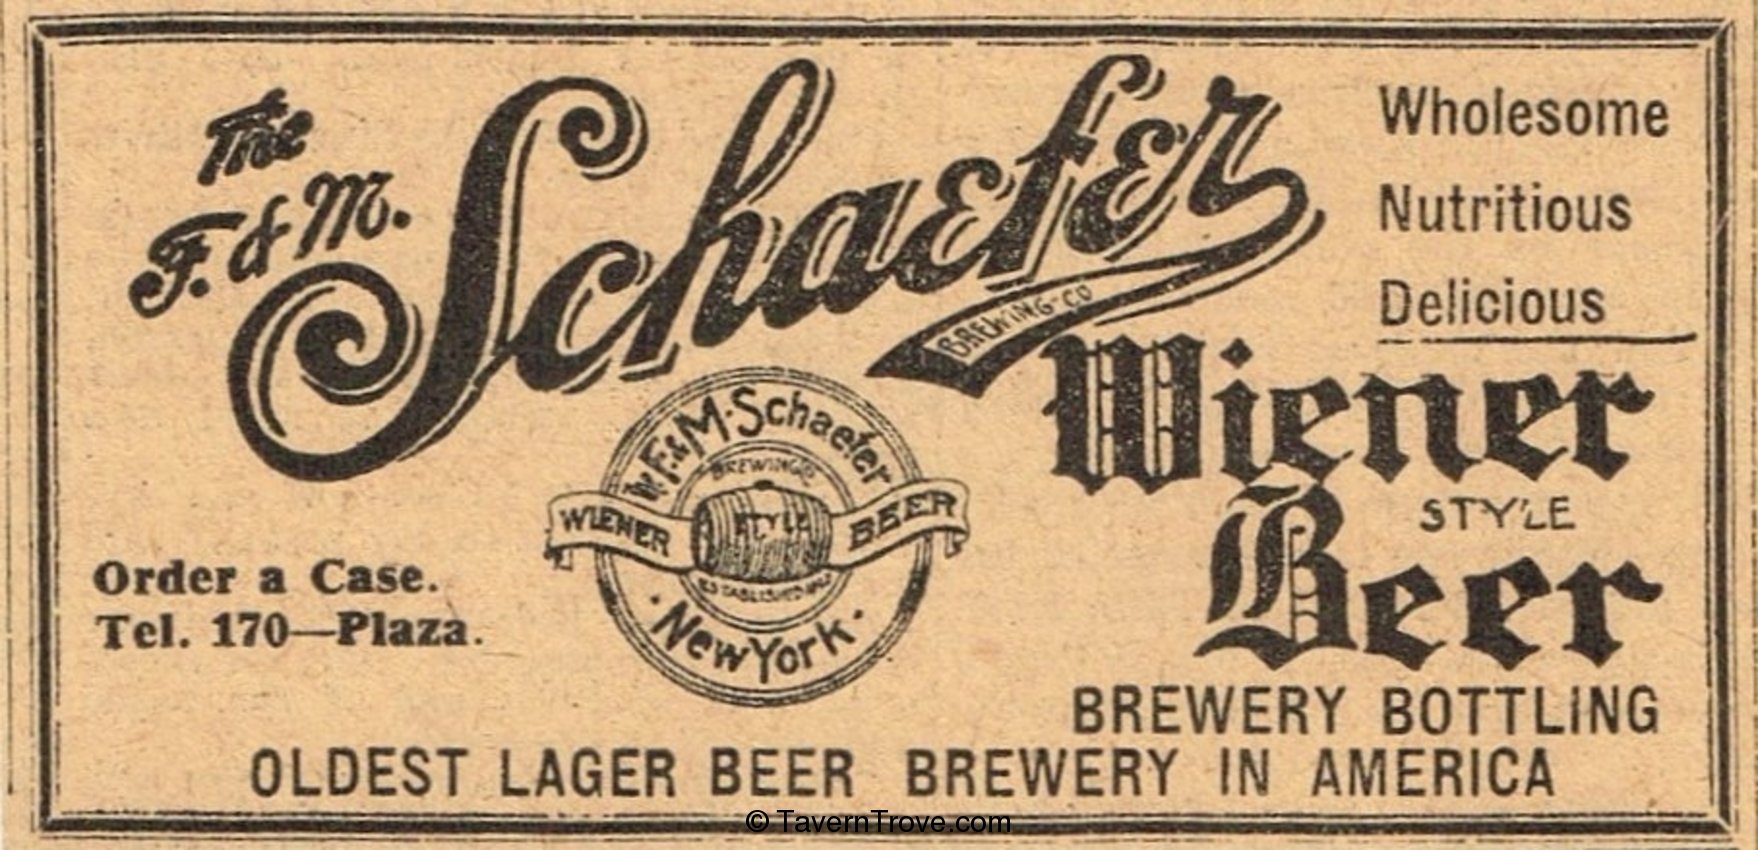 Schaefer Wiener Beer